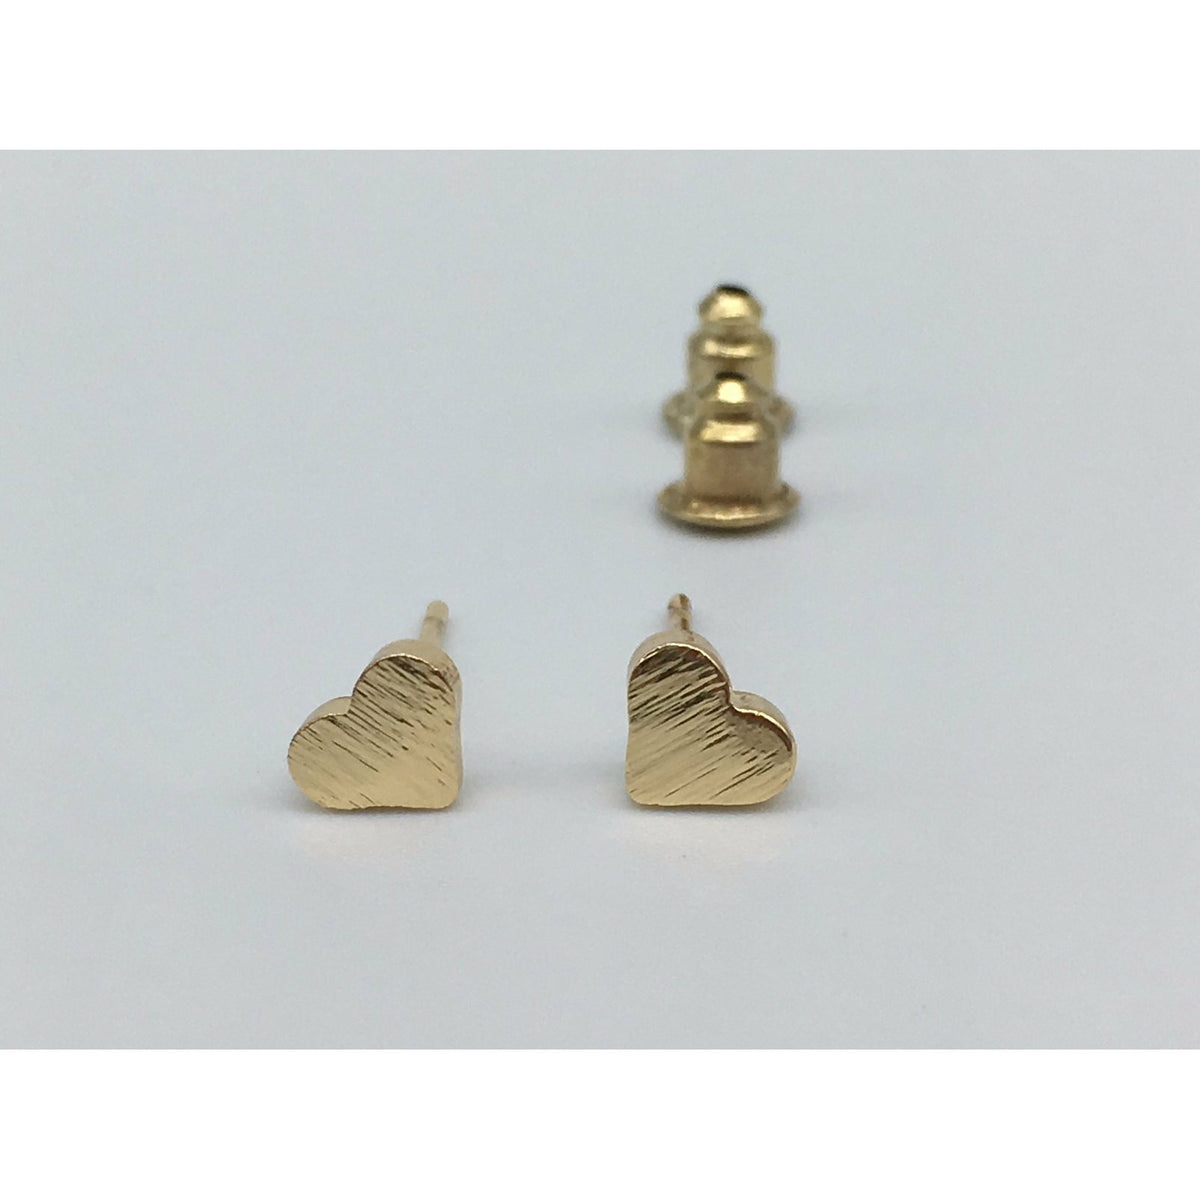 Tween to Teen Earrings Gold Brushed Metal Tiny Heart Stud Earrings 0720252999906 tween and teen